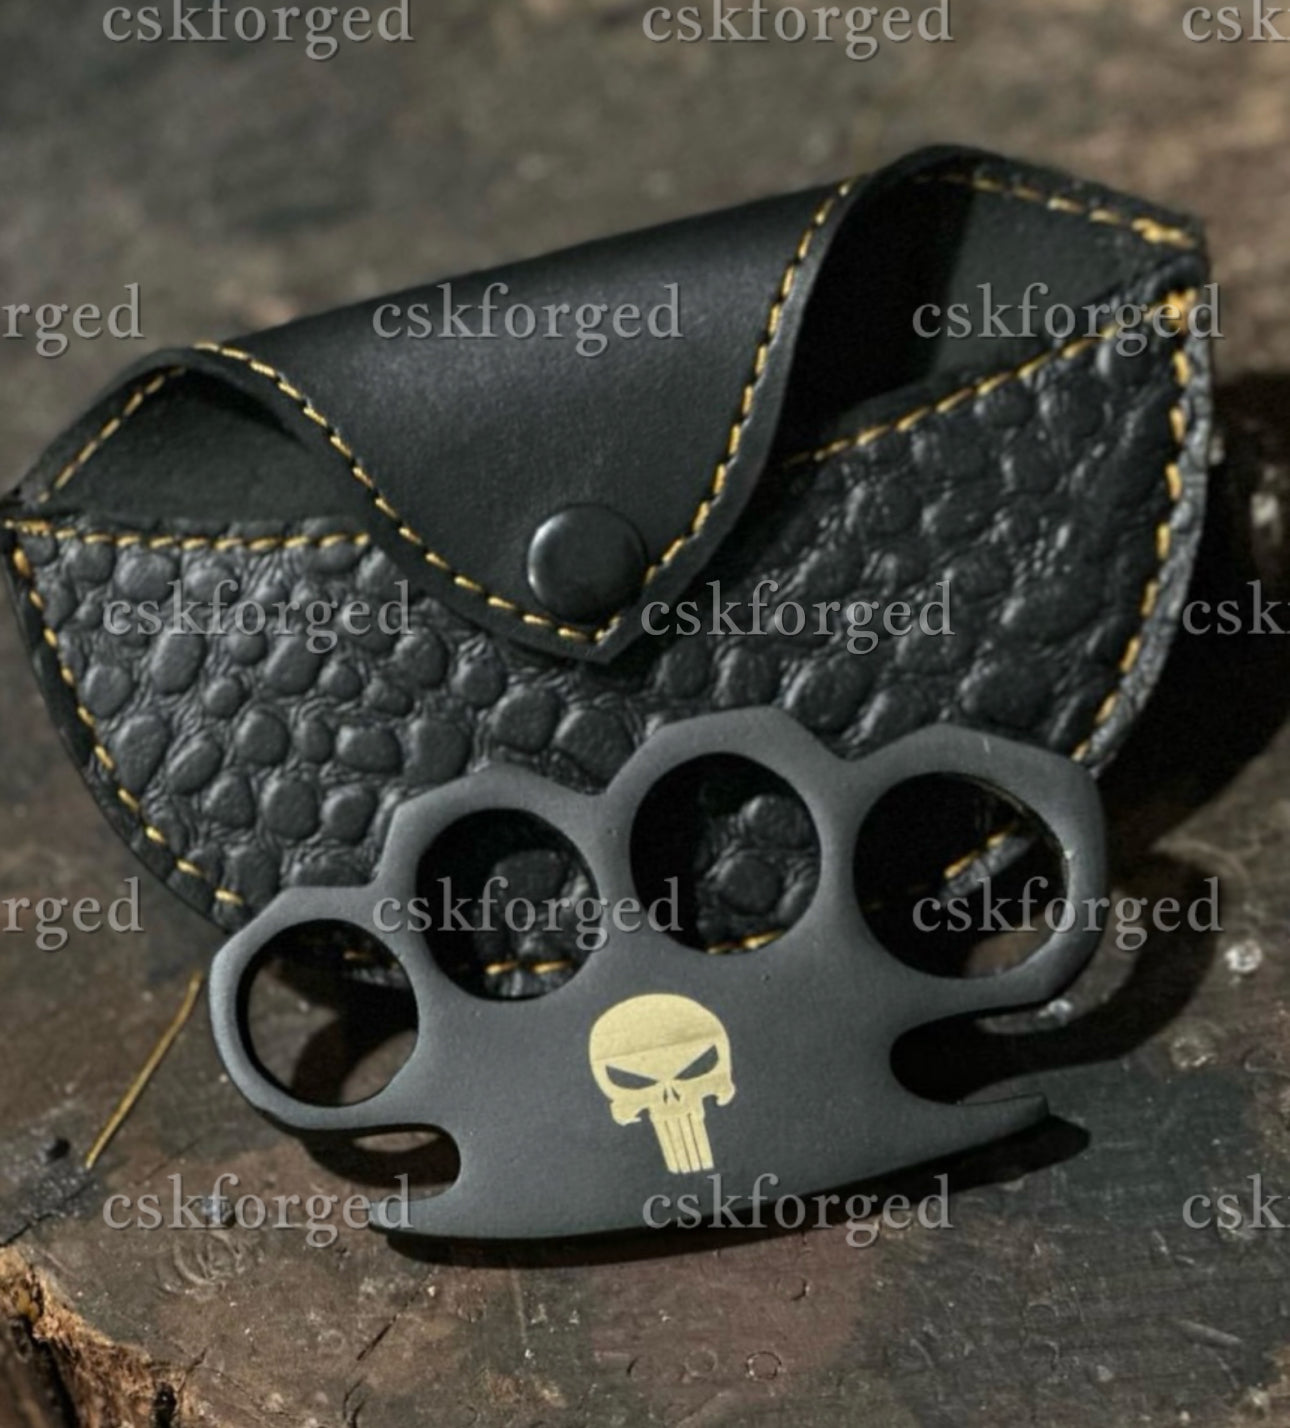 Punisher's Skull Knuckle" Hand Casted Black Coated Knuckle